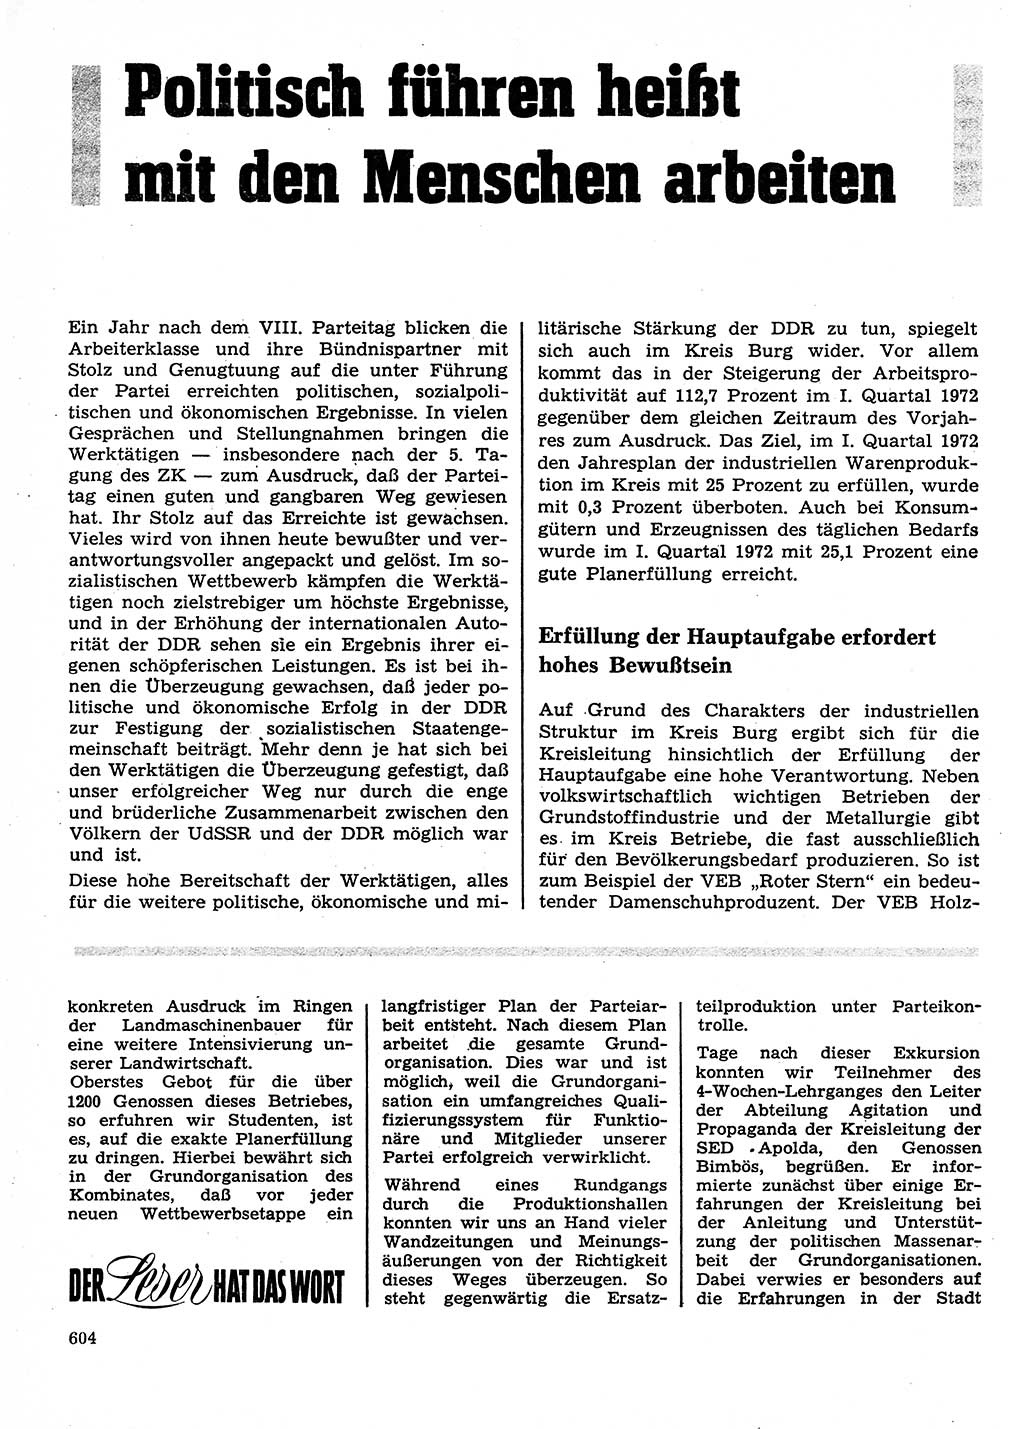 Neuer Weg (NW), Organ des Zentralkomitees (ZK) der SED (Sozialistische Einheitspartei Deutschlands) für Fragen des Parteilebens, 27. Jahrgang [Deutsche Demokratische Republik (DDR)] 1972, Seite 604 (NW ZK SED DDR 1972, S. 604)